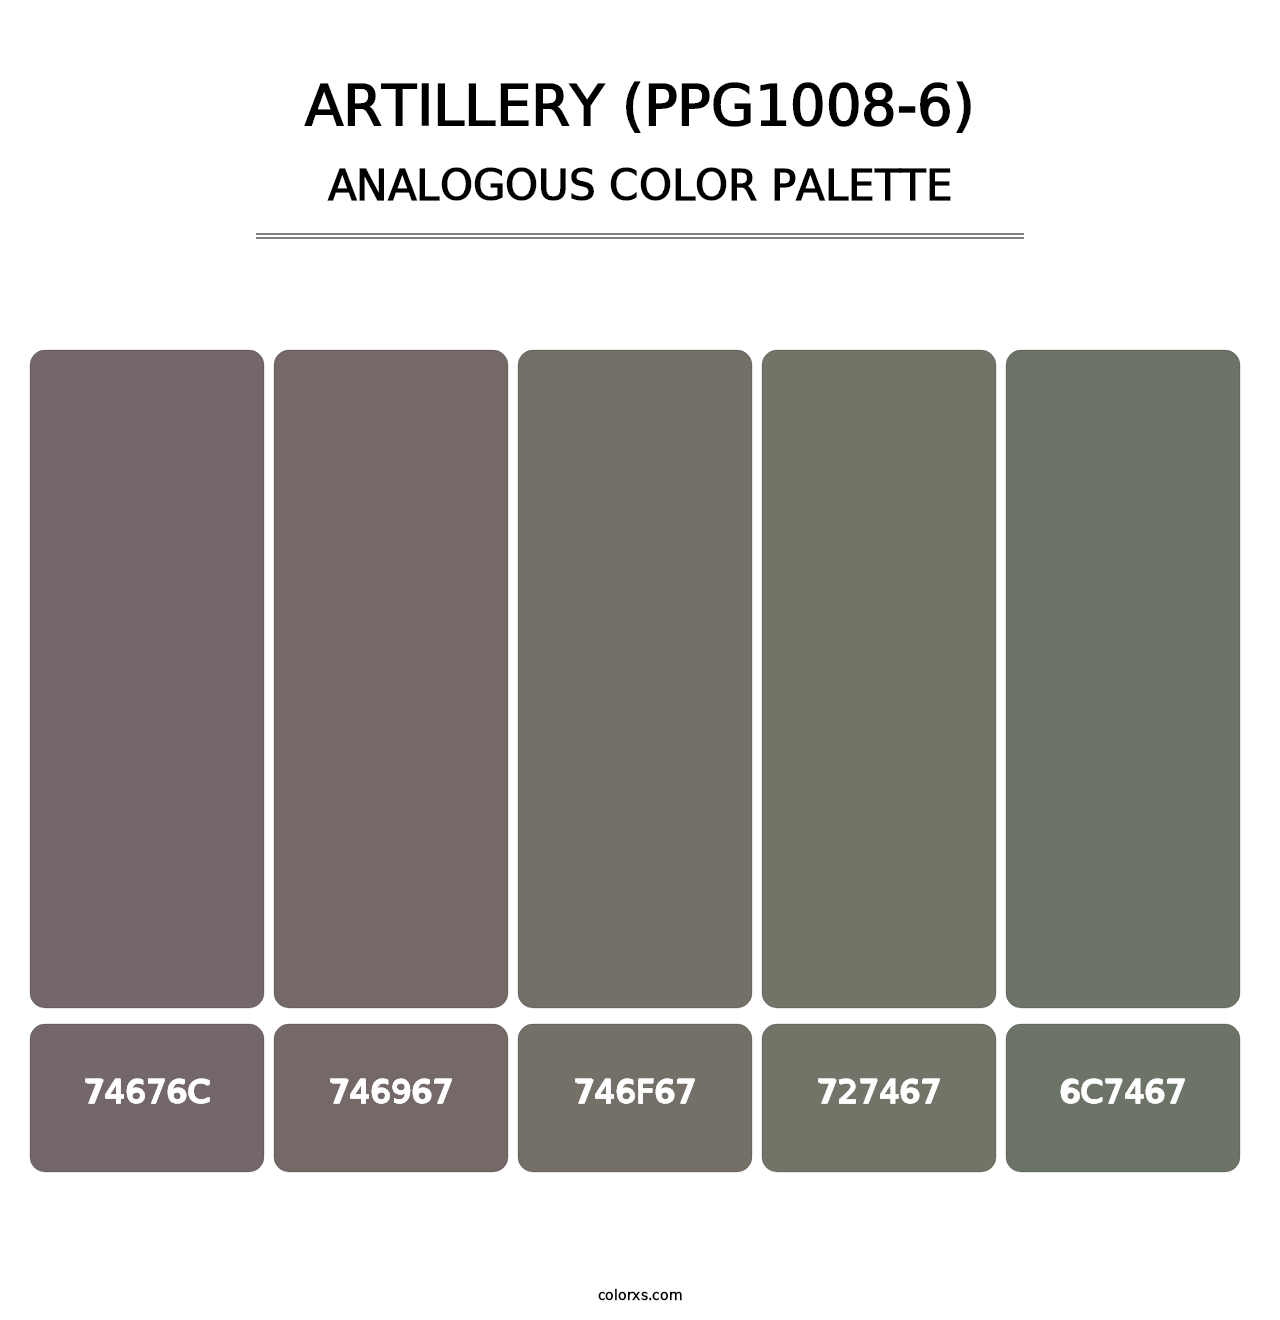 Artillery (PPG1008-6) - Analogous Color Palette